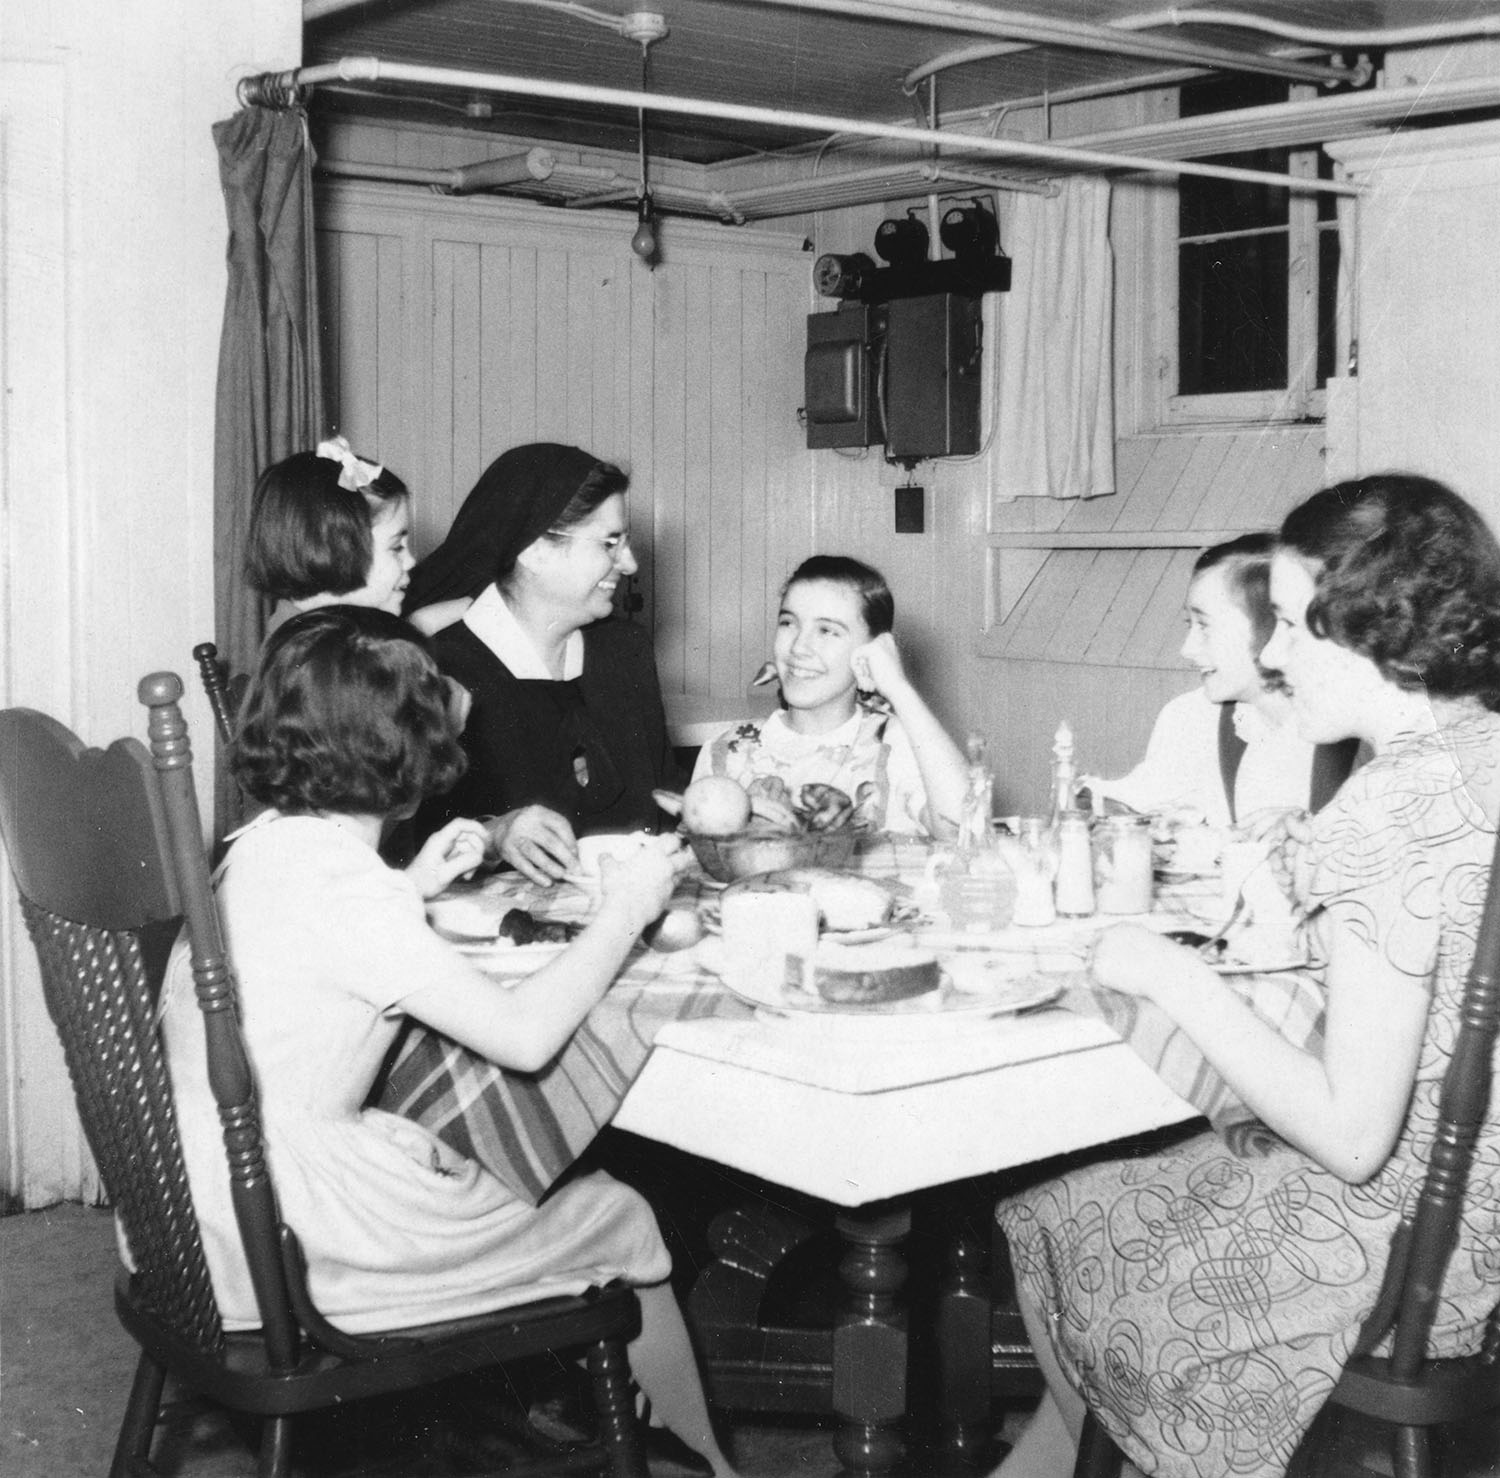 Une femme riant, portant le voile, assise à une table avec cinq enfants. 